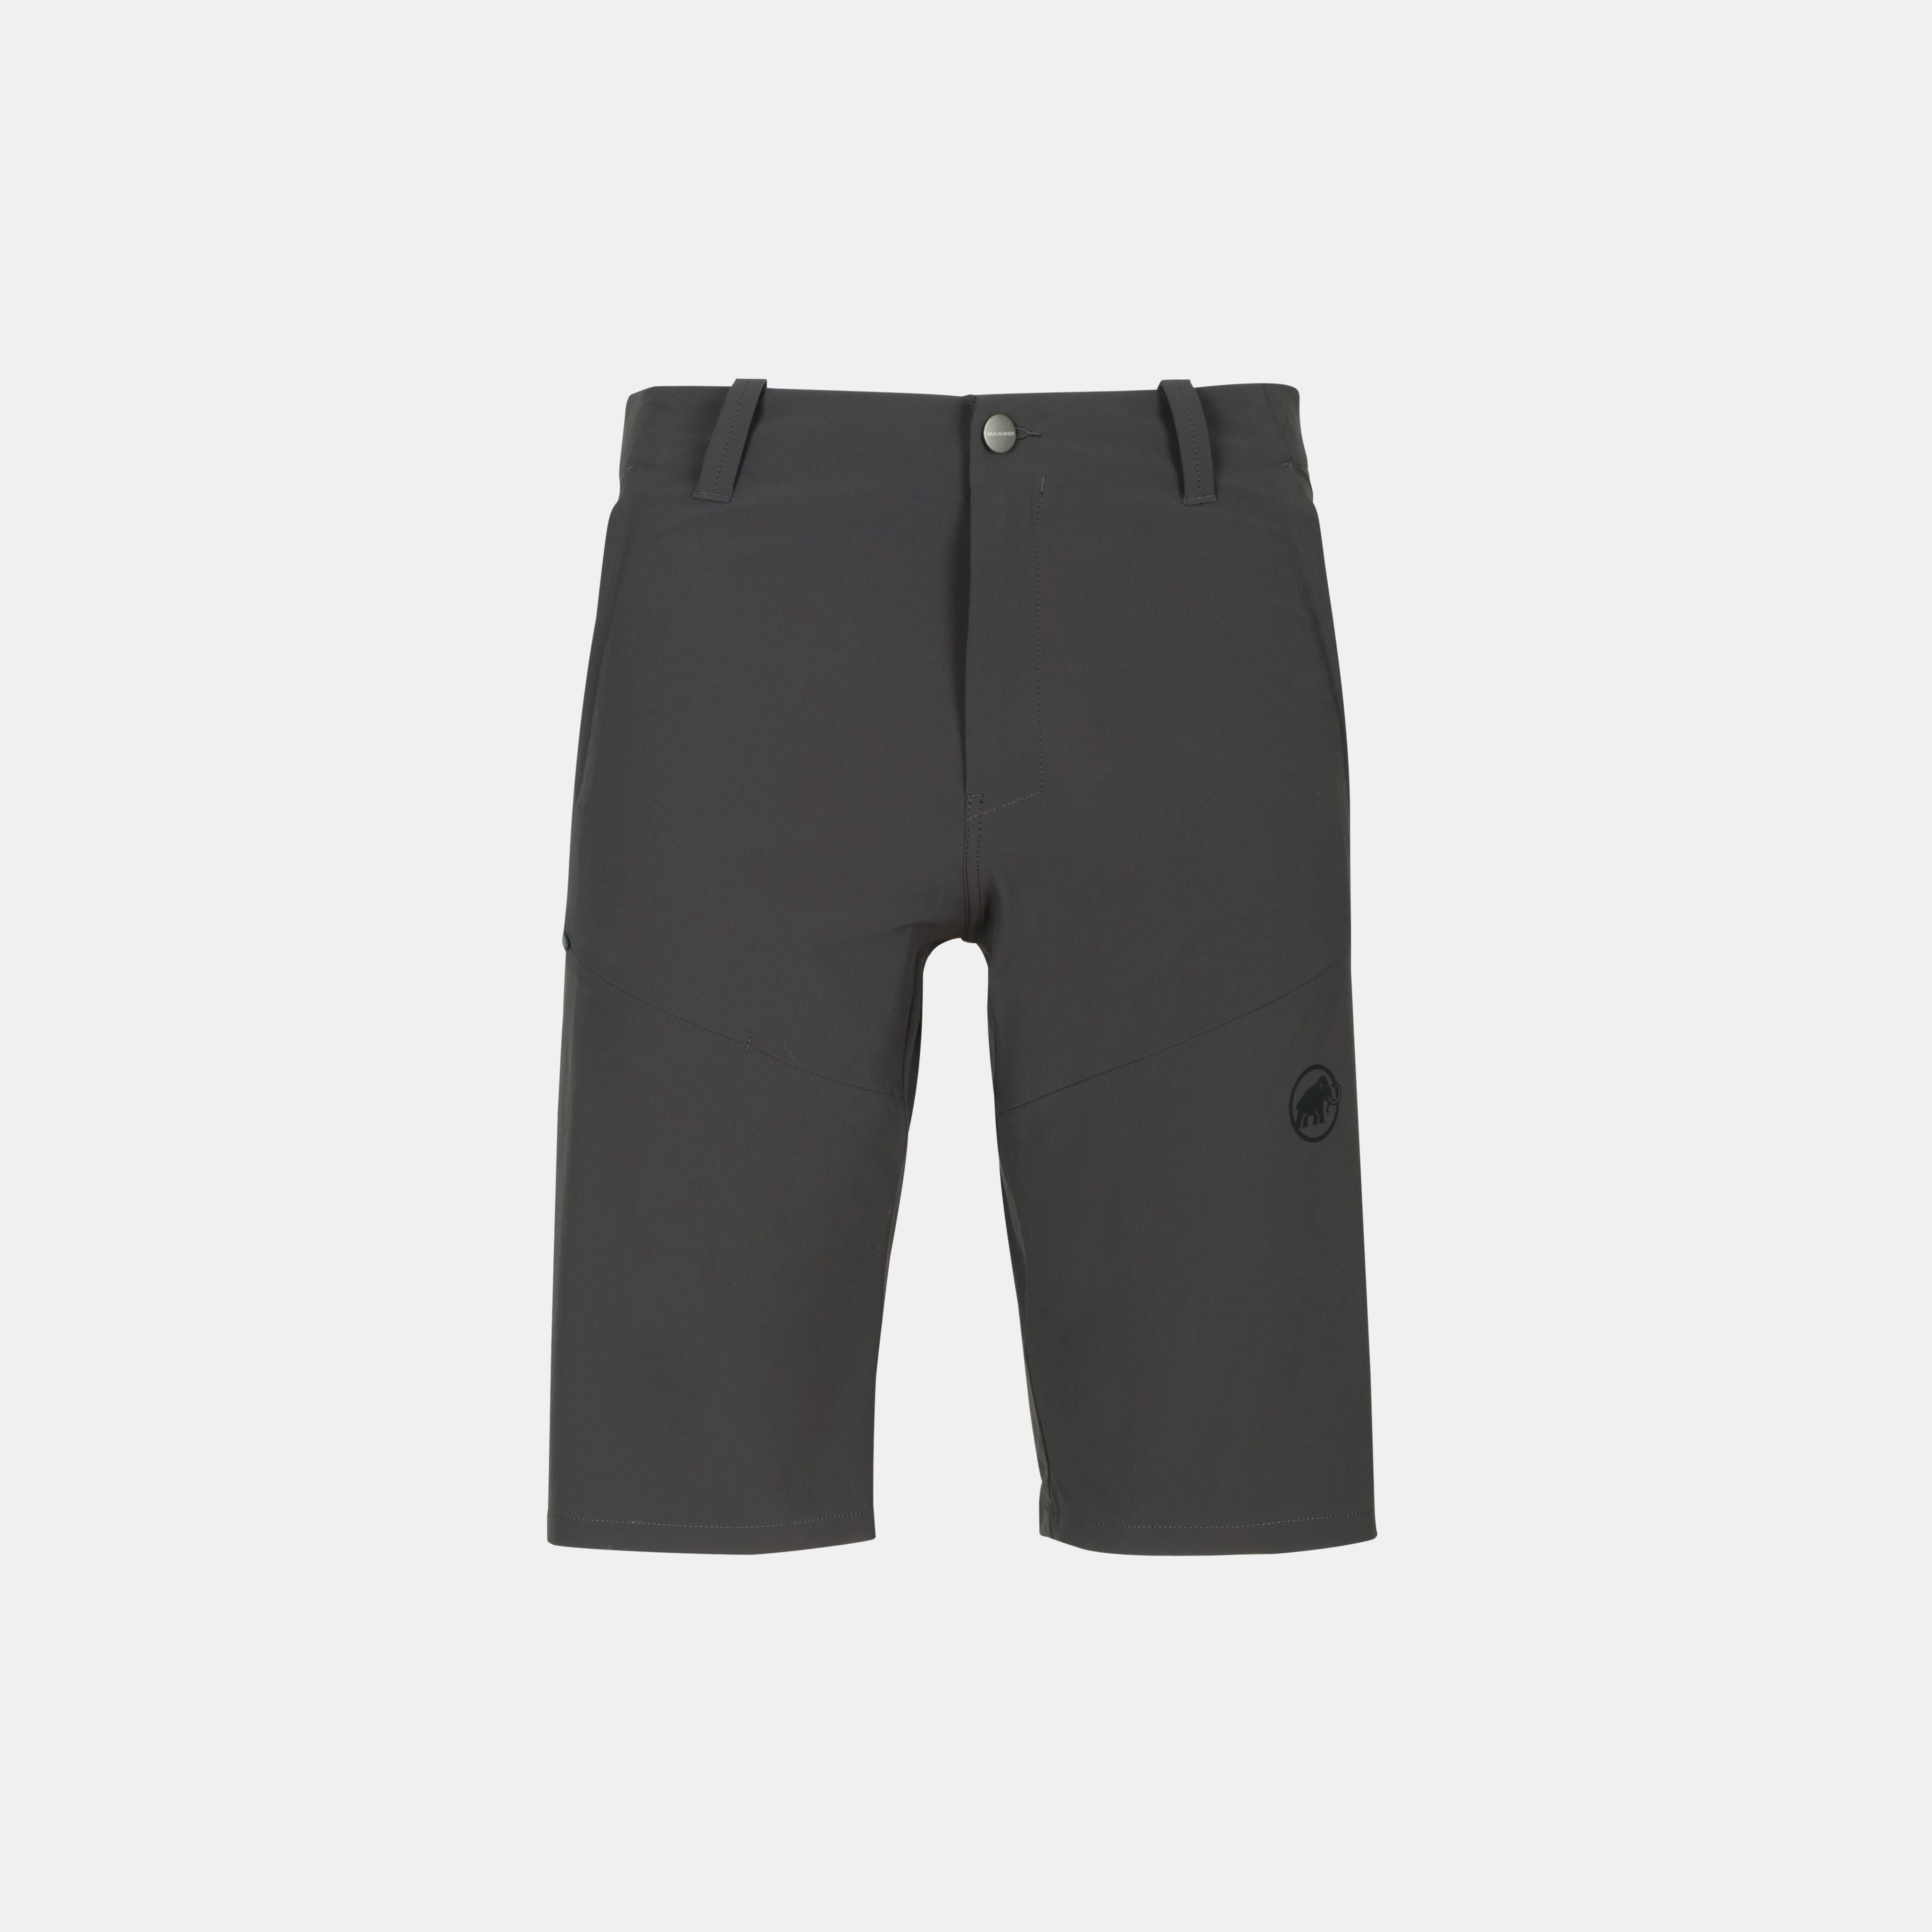 Runbold Shorts Men product image